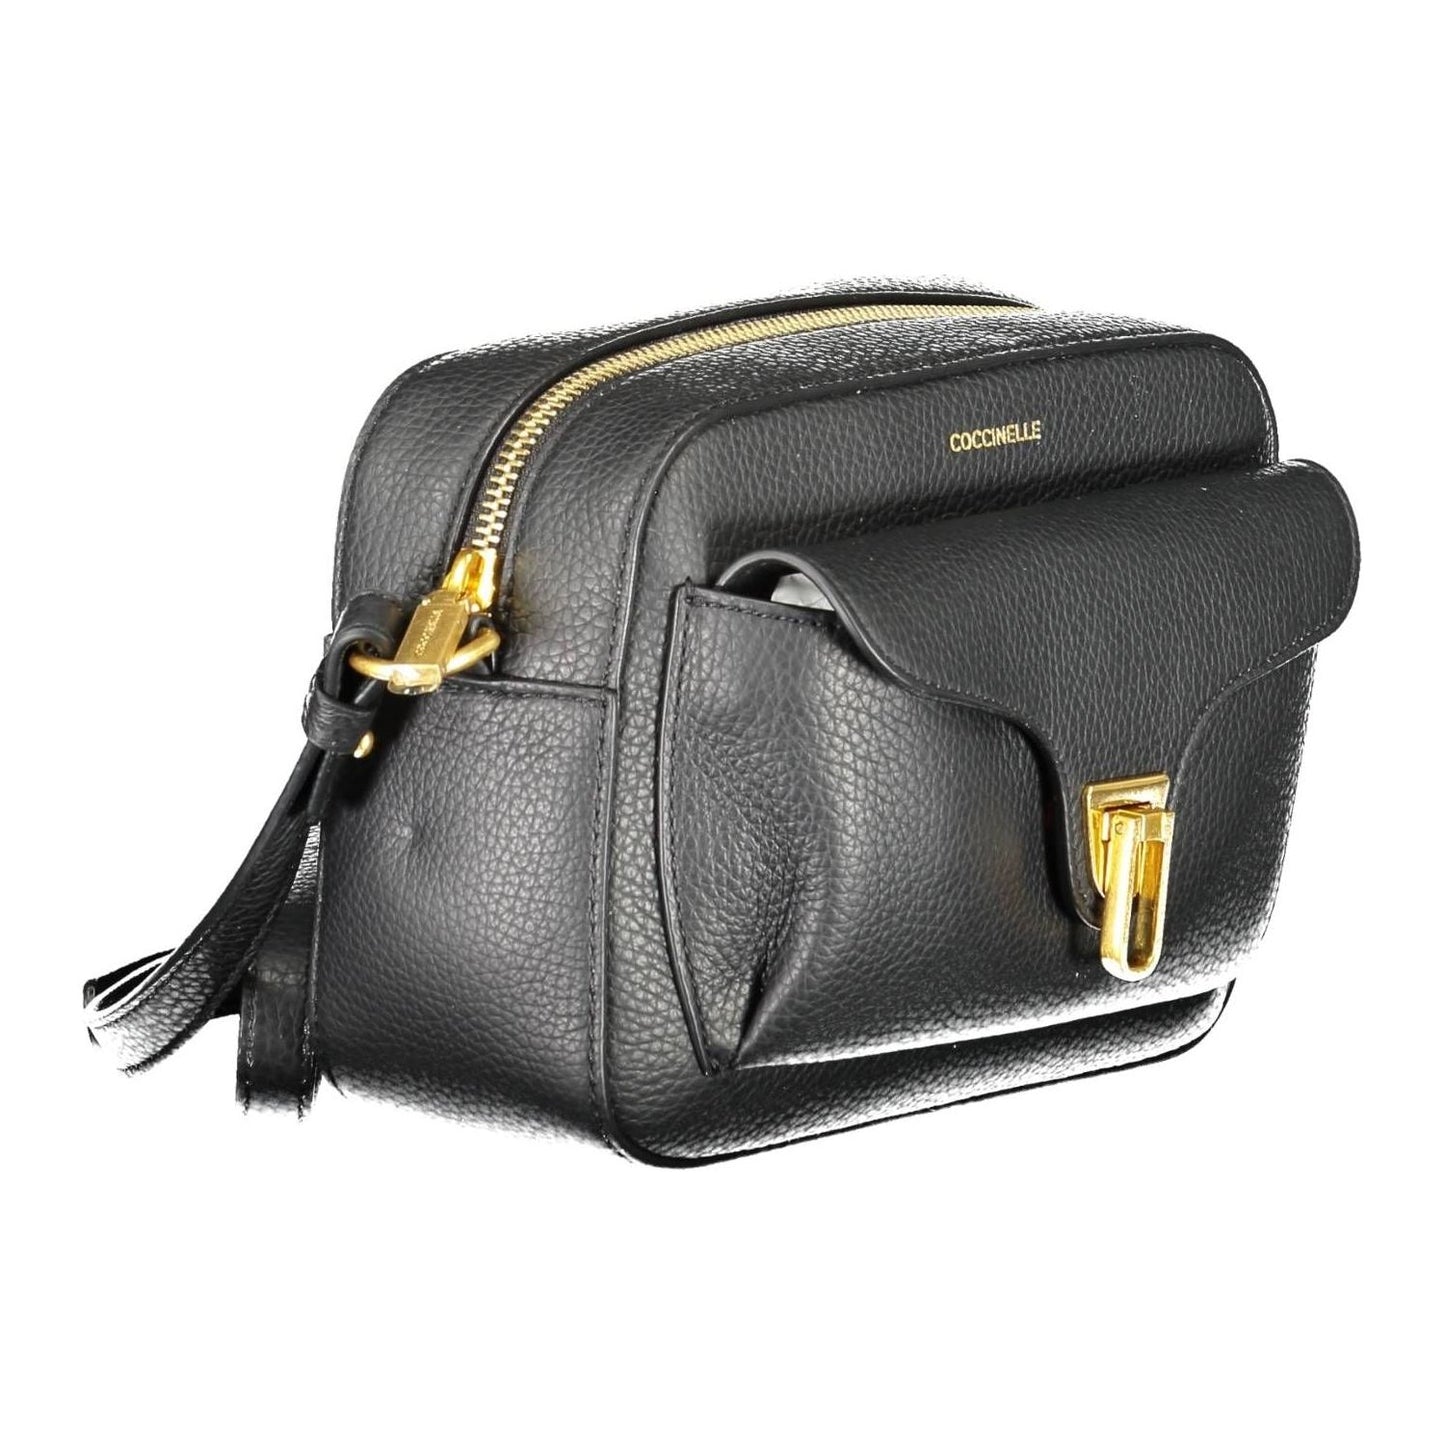 Coccinelle Elegant Black Leather Shoulder Bag elegant-black-leather-shoulder-bag-1